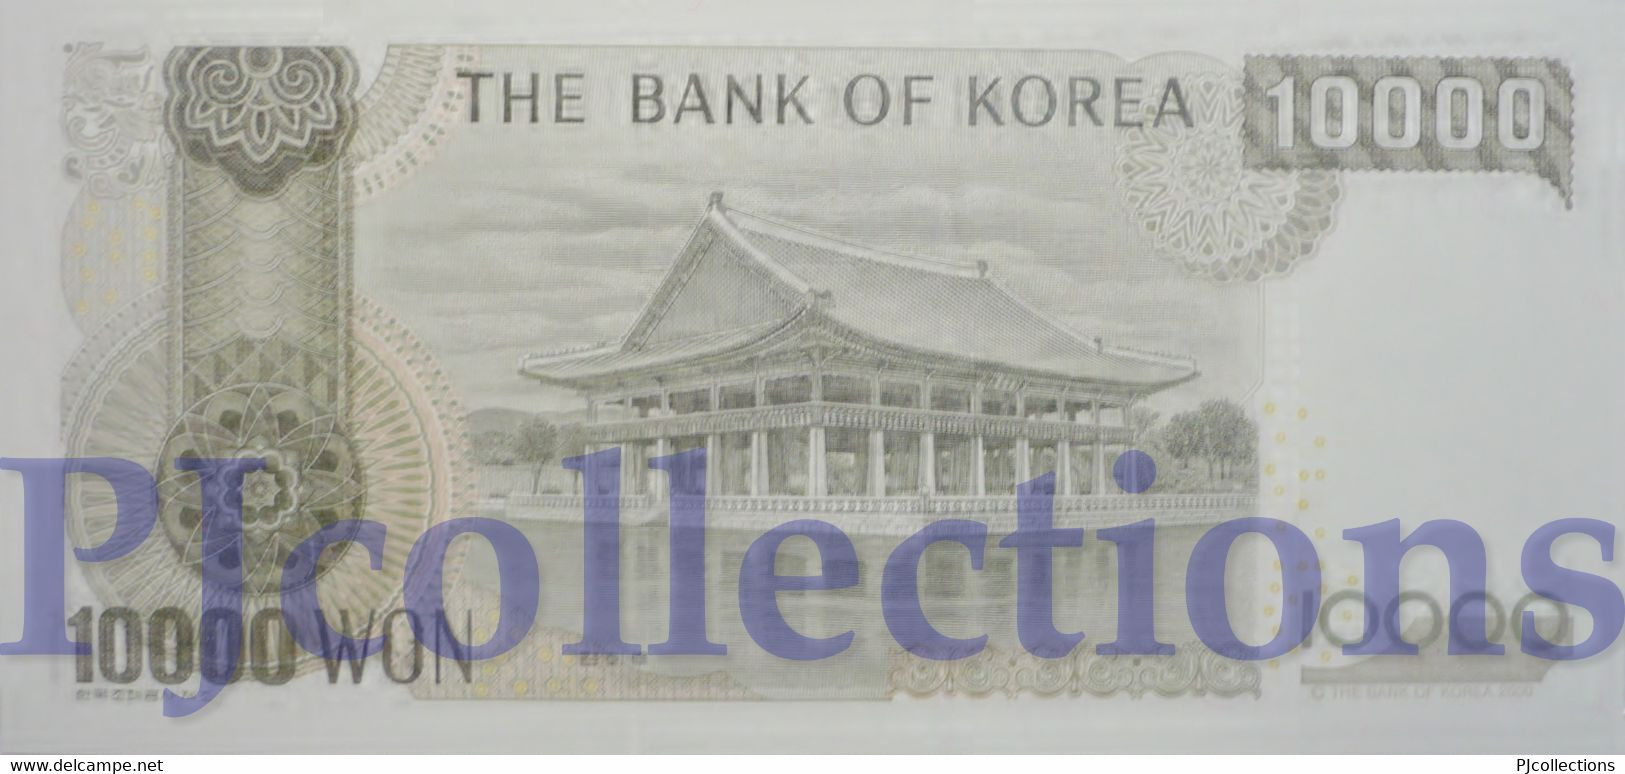 SOUTH KOREA 10000 WON 2000 PICK 52 UNC - Corea Del Sur